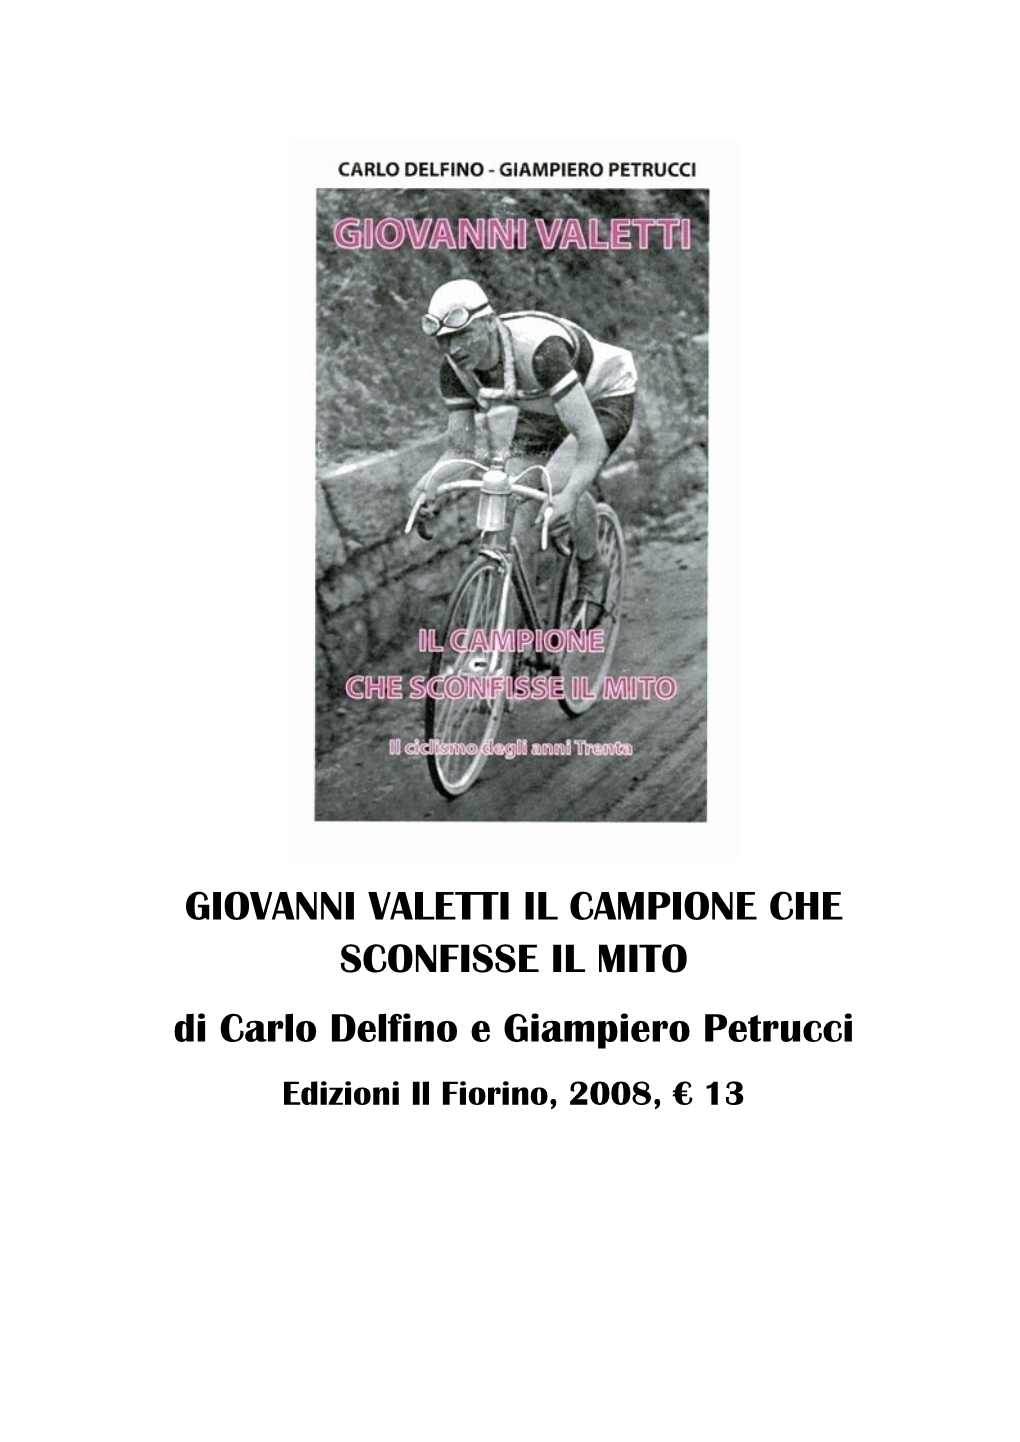 GIOVANNI VALETTI IL CAMPIONE CHE SCONFISSE IL MITO Di Carlo Delfino E Giampiero Petrucci Edizioni Il Fiorino, 2008, € 13